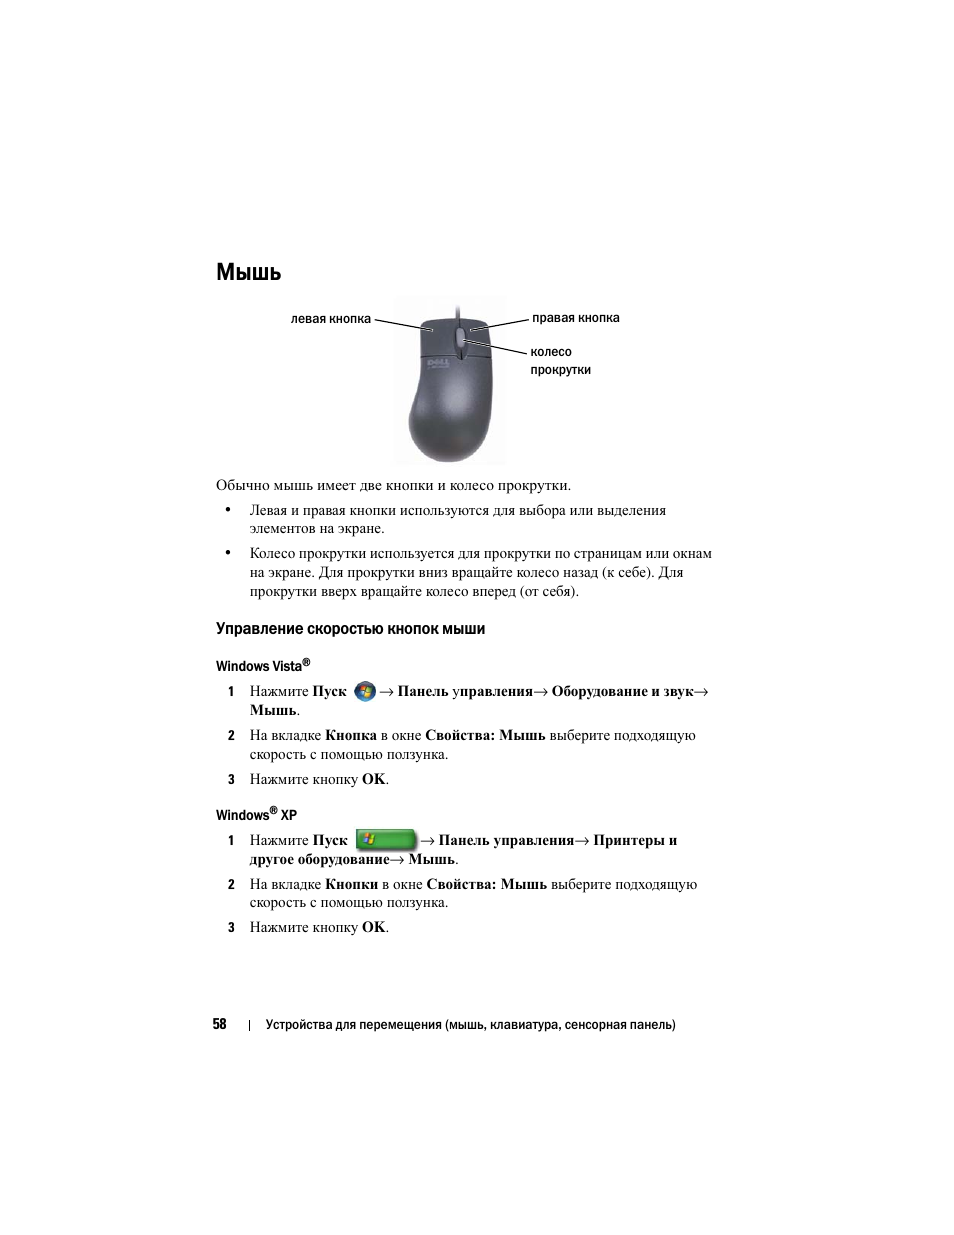 Мышь, Управление скоростью кнопок мыши | Инструкция по эксплуатации Dell Inspiron 560 | Страница 58 / 384